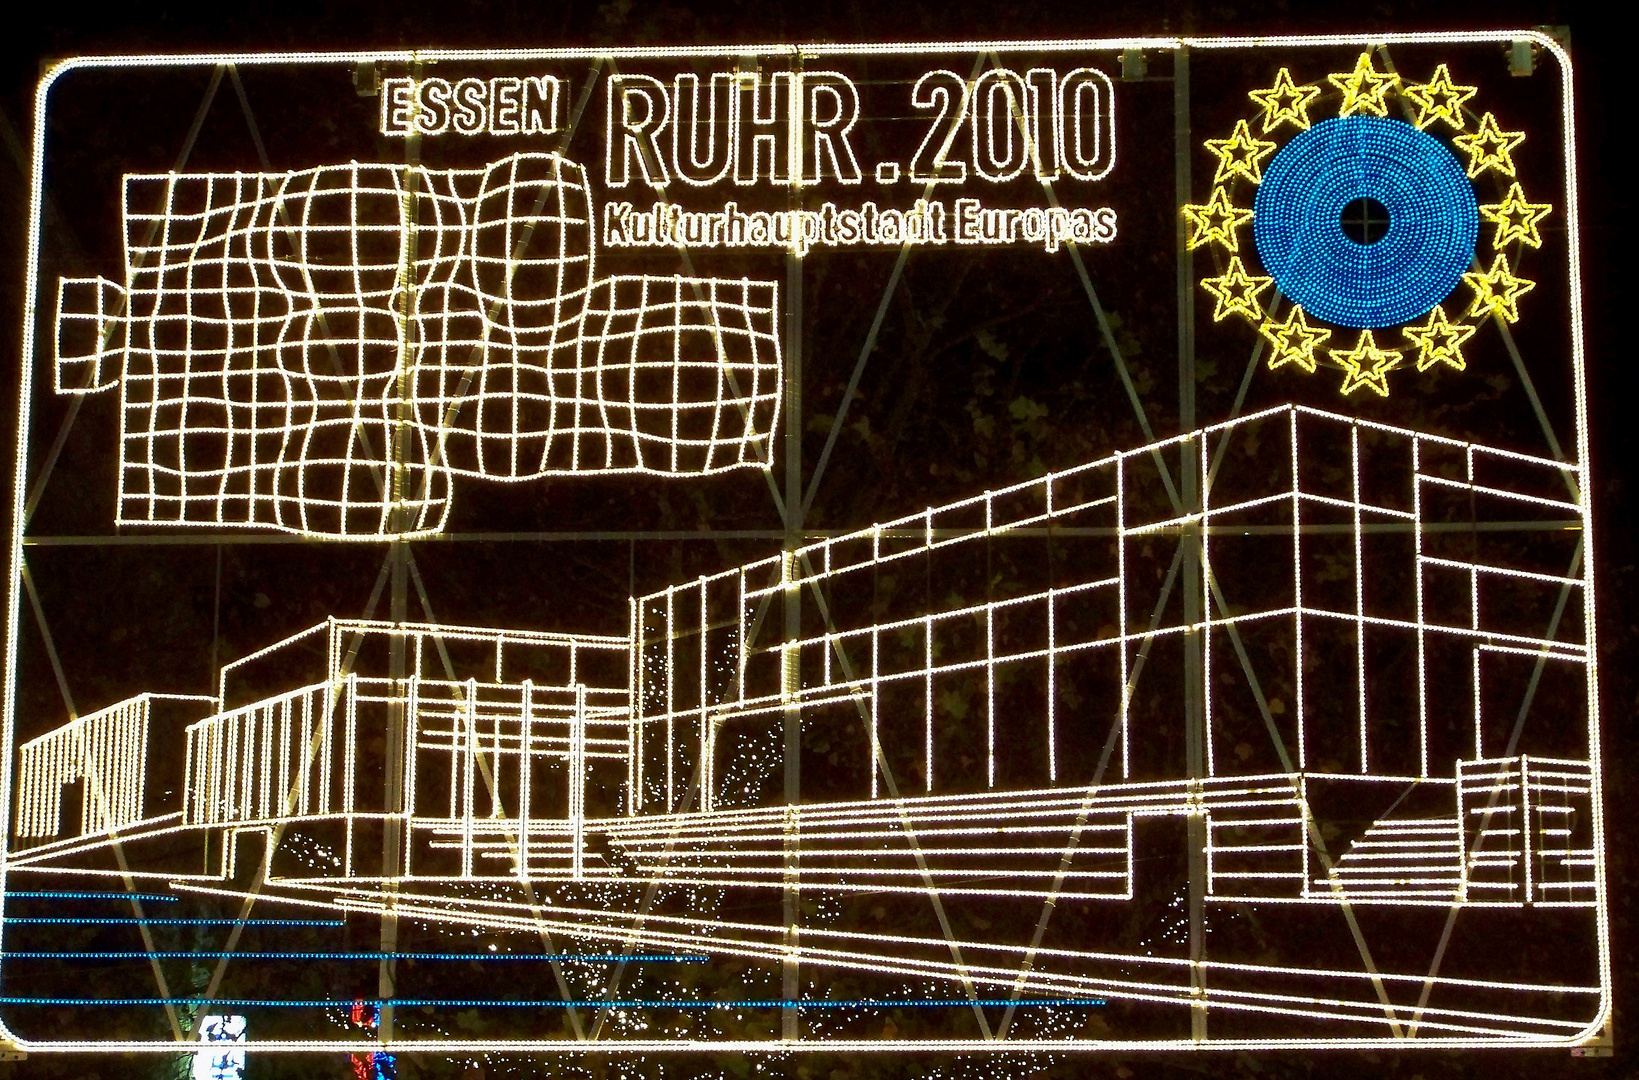 Ruhr 2010